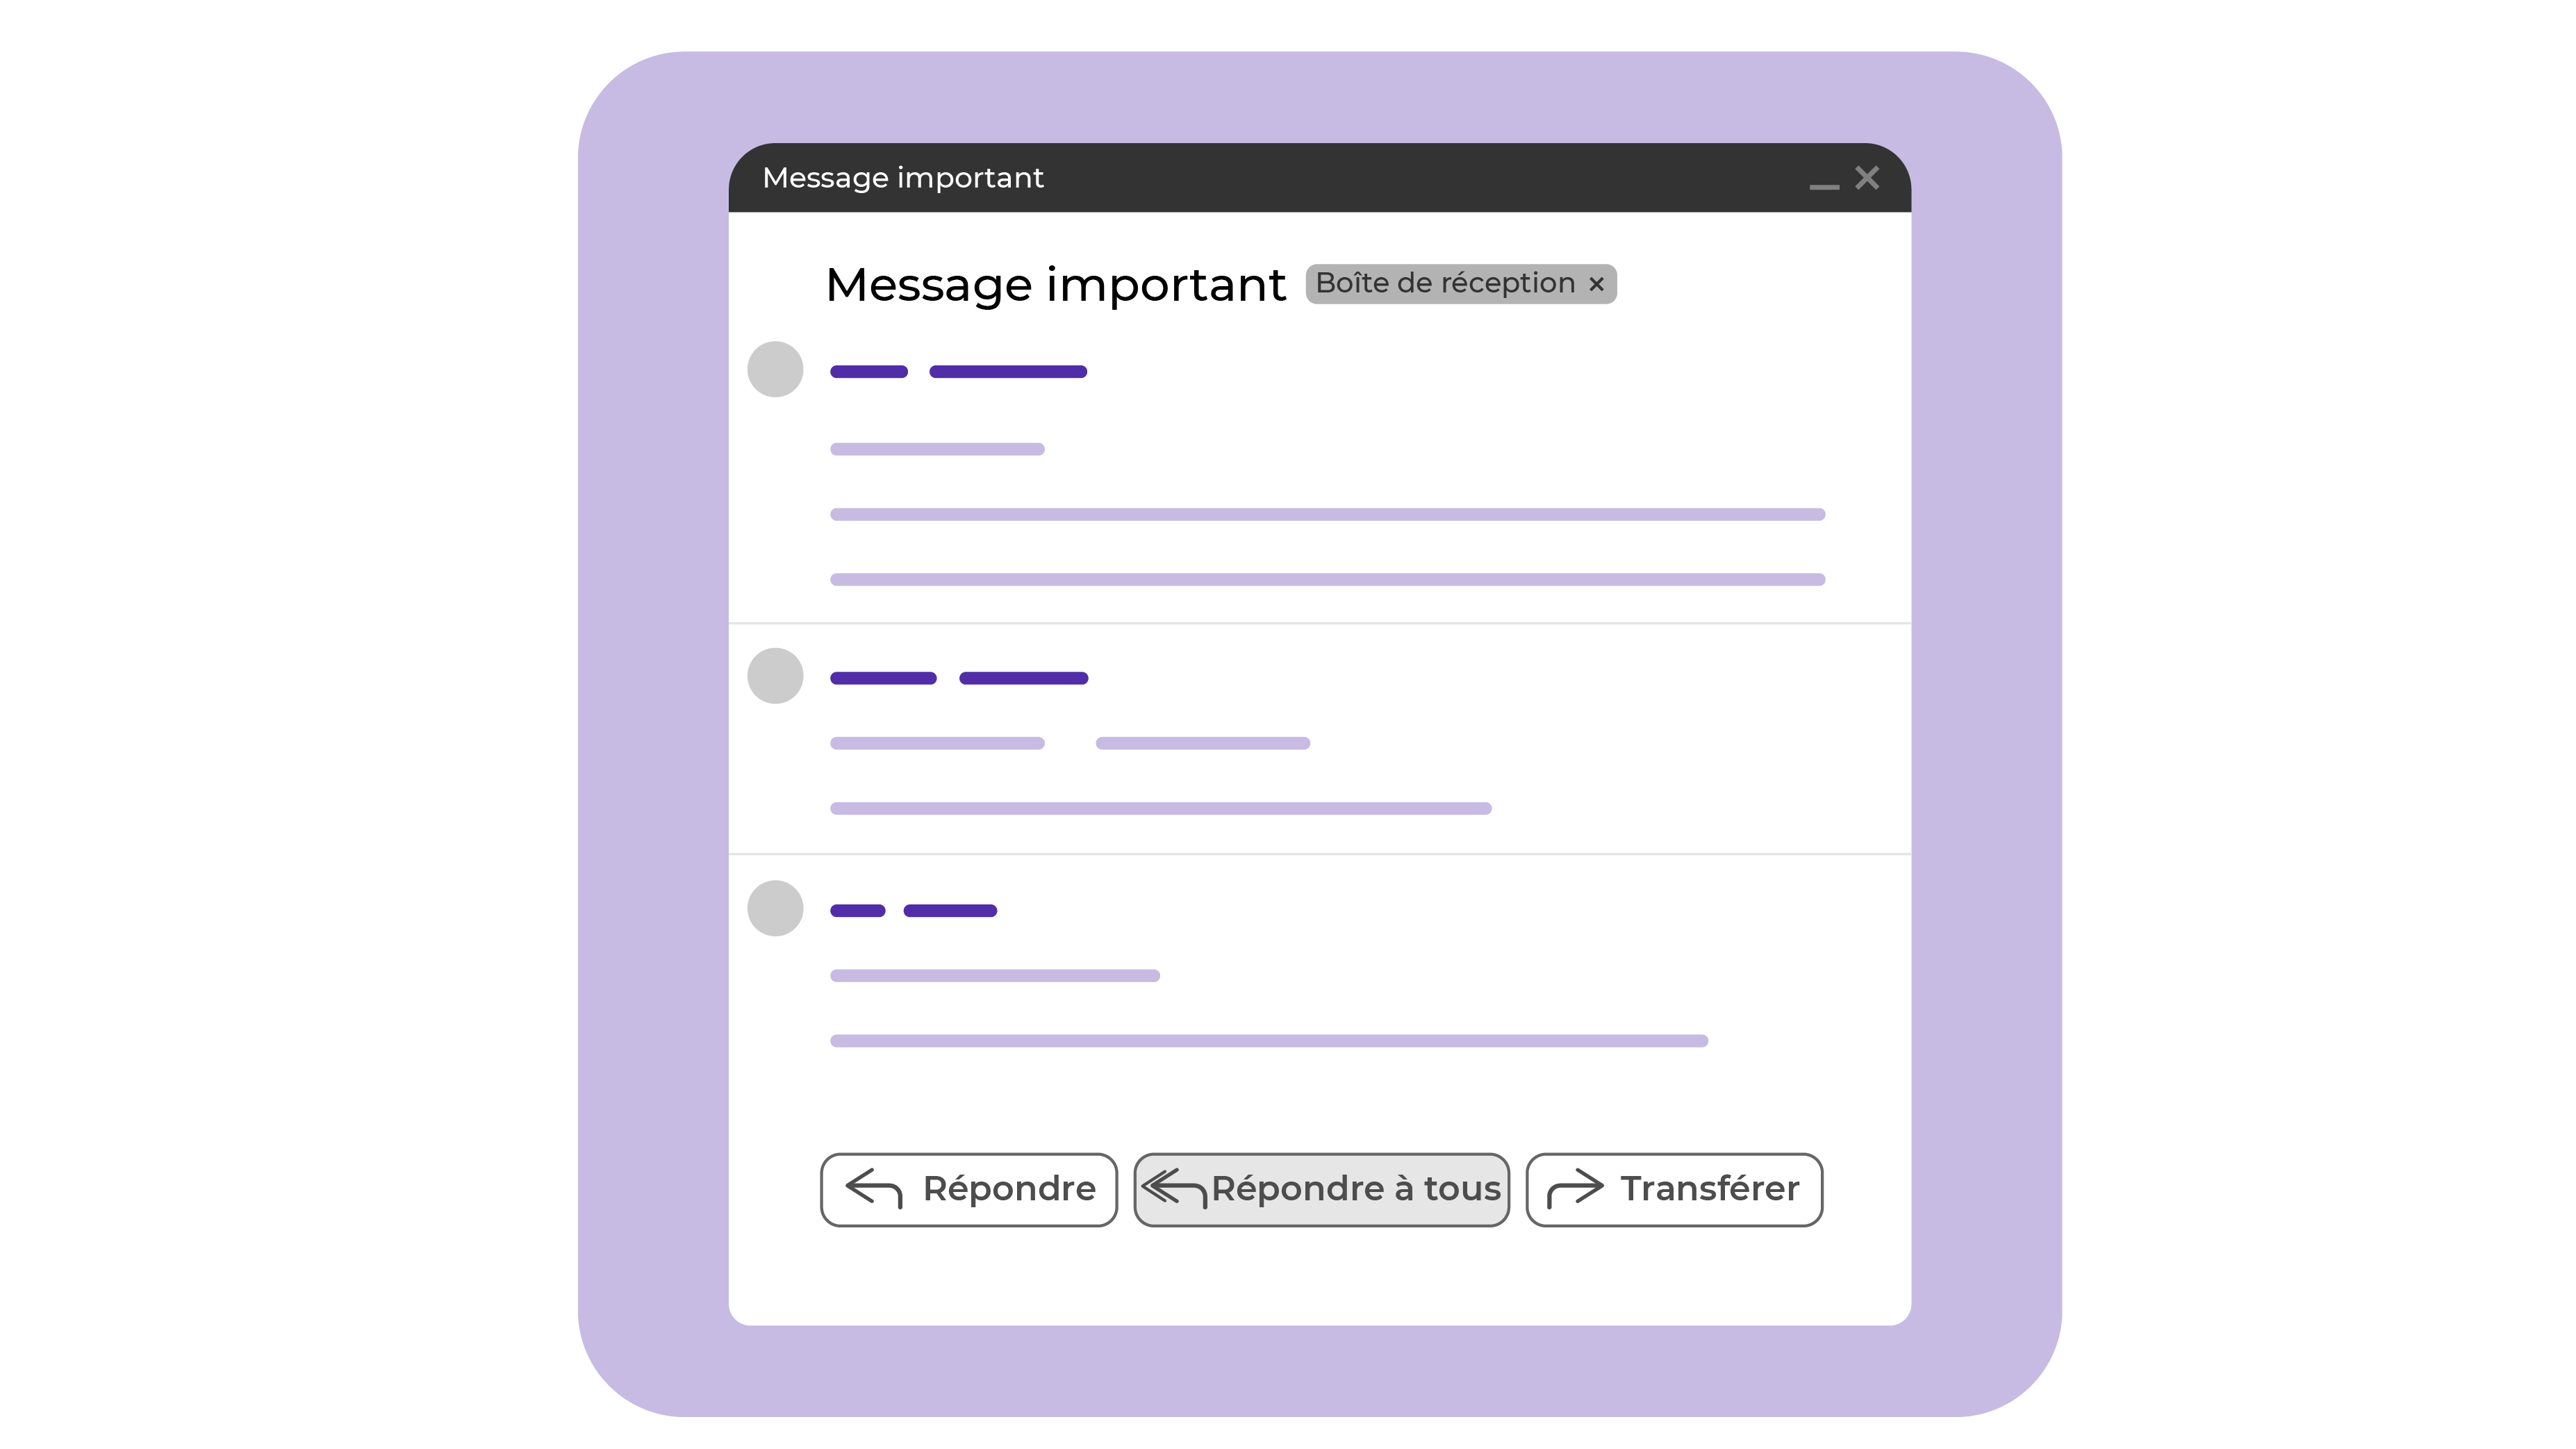 Représentation d'un email type avec les trois boutons de réponses : répondre, répondre à tous, transférer